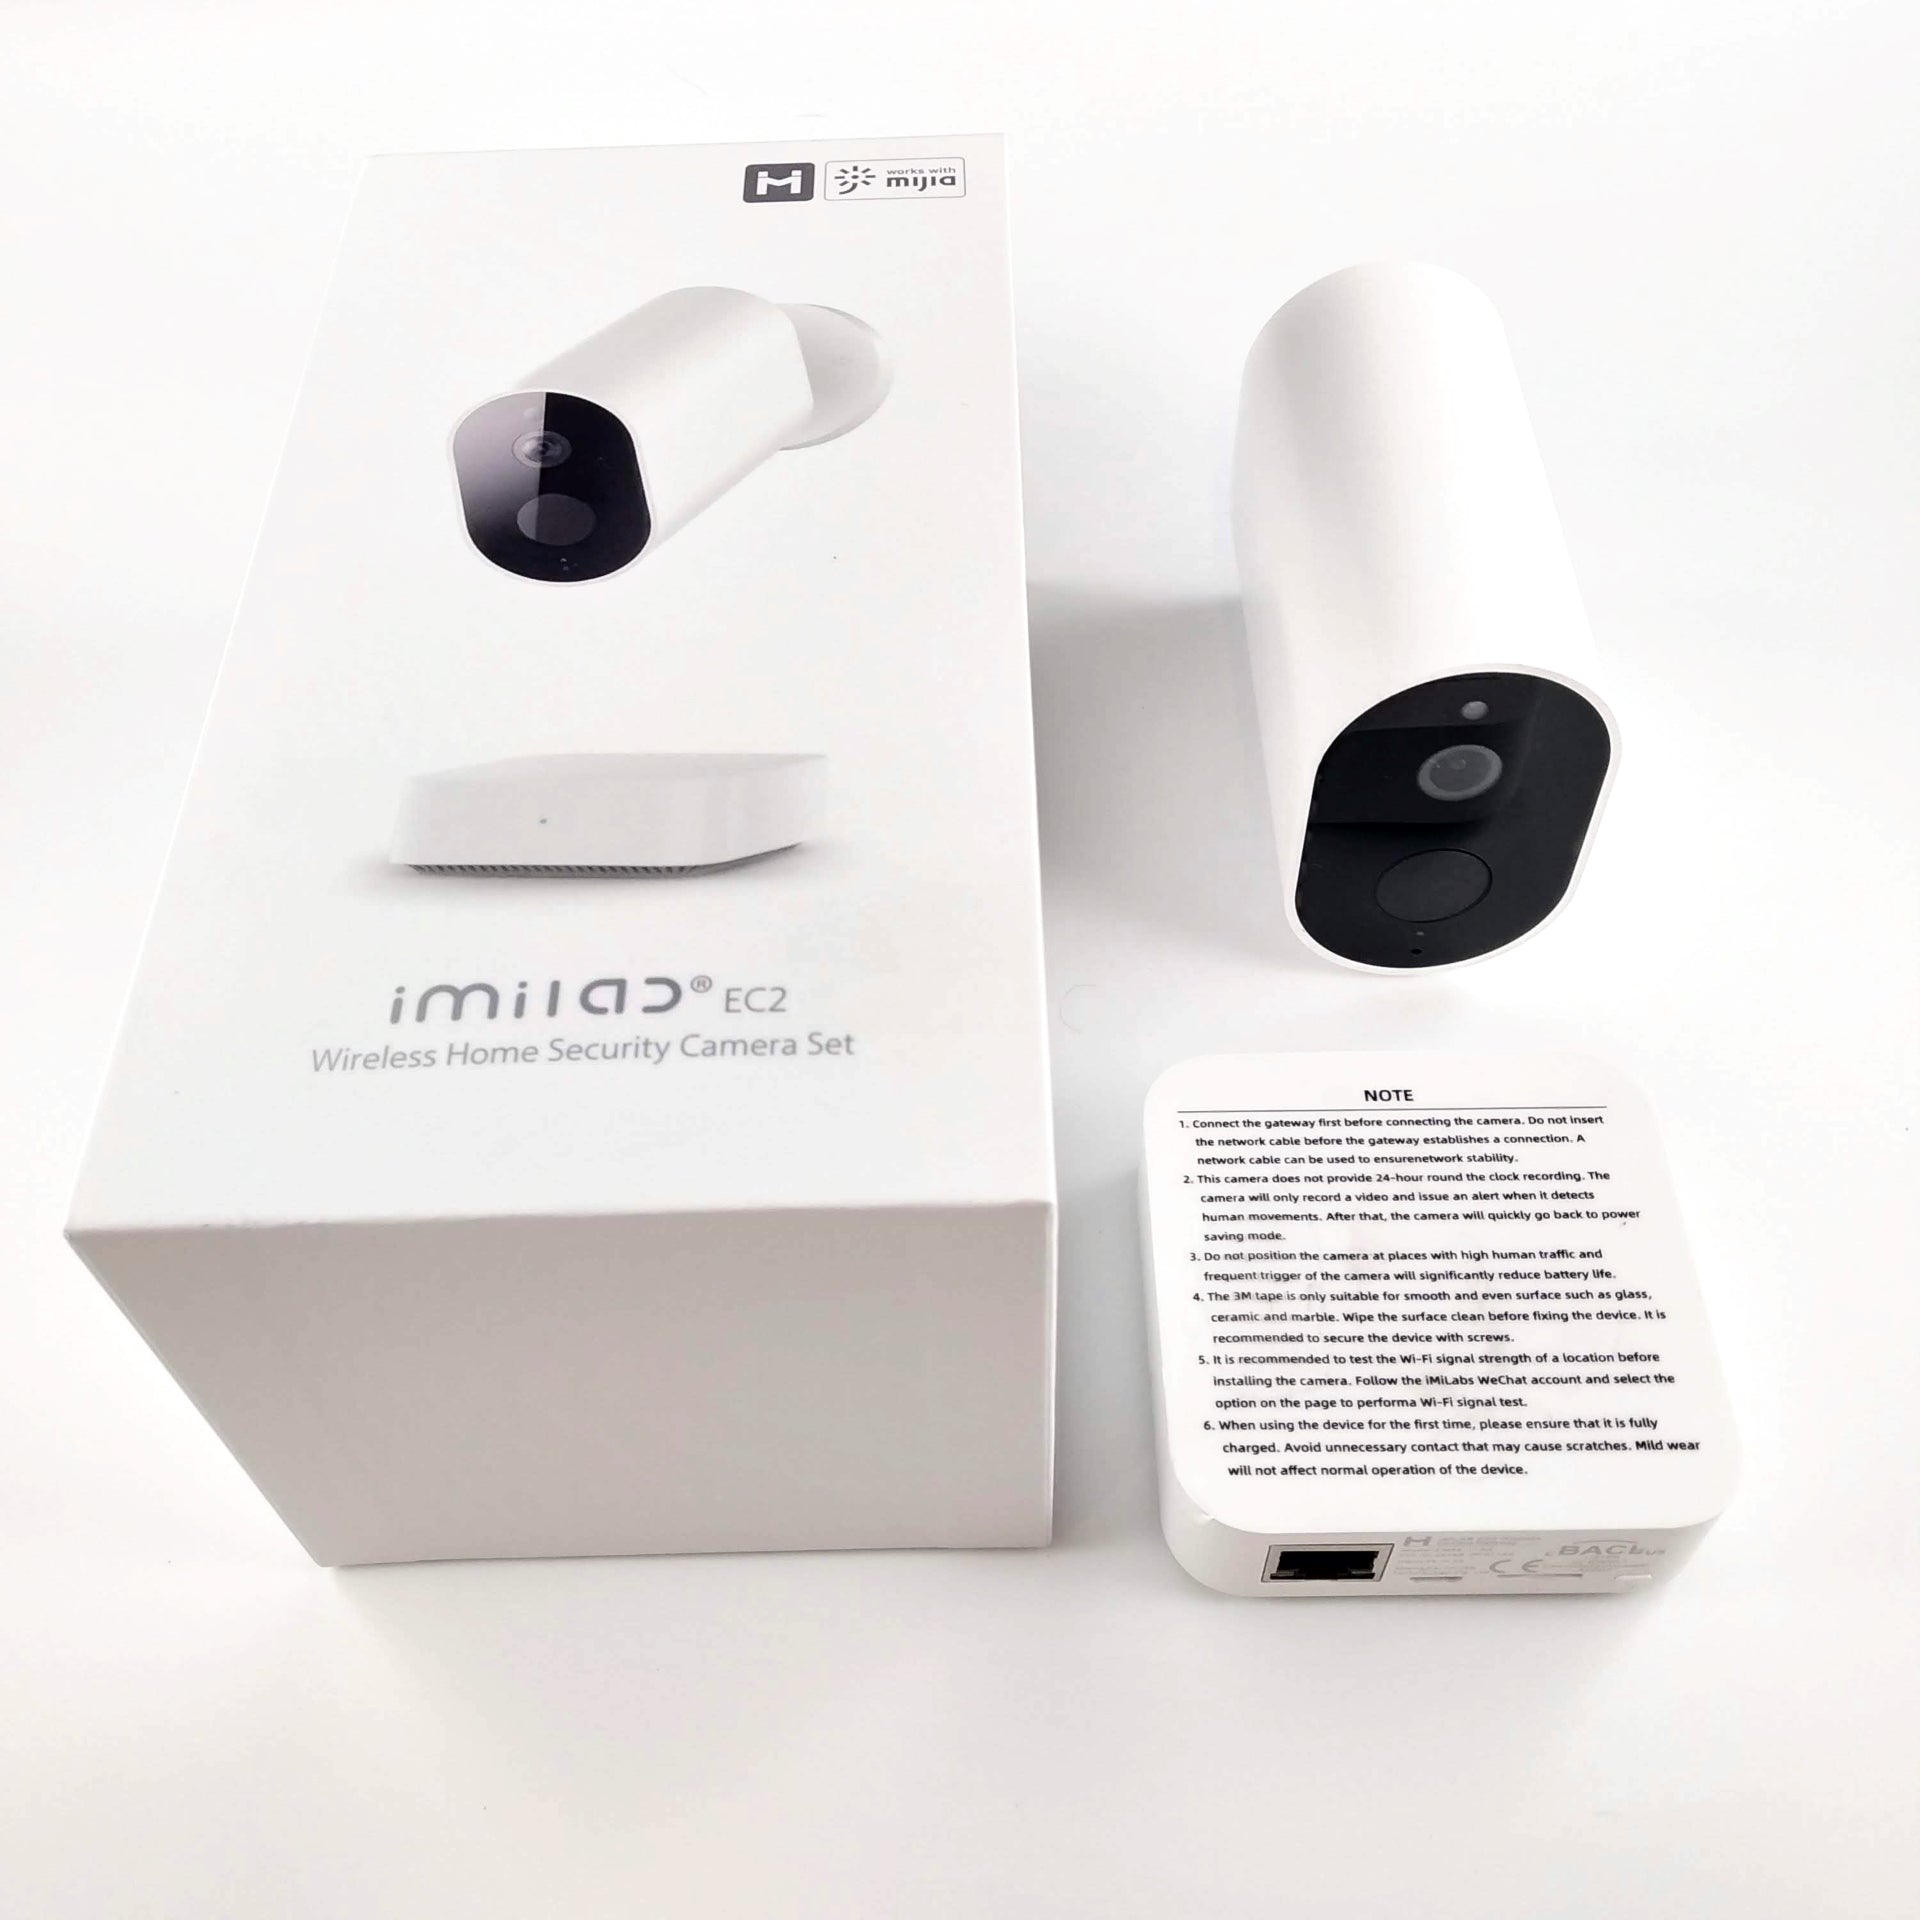 Drahtlose, autonome & wiederaufladbare Videoüberwachungskamera